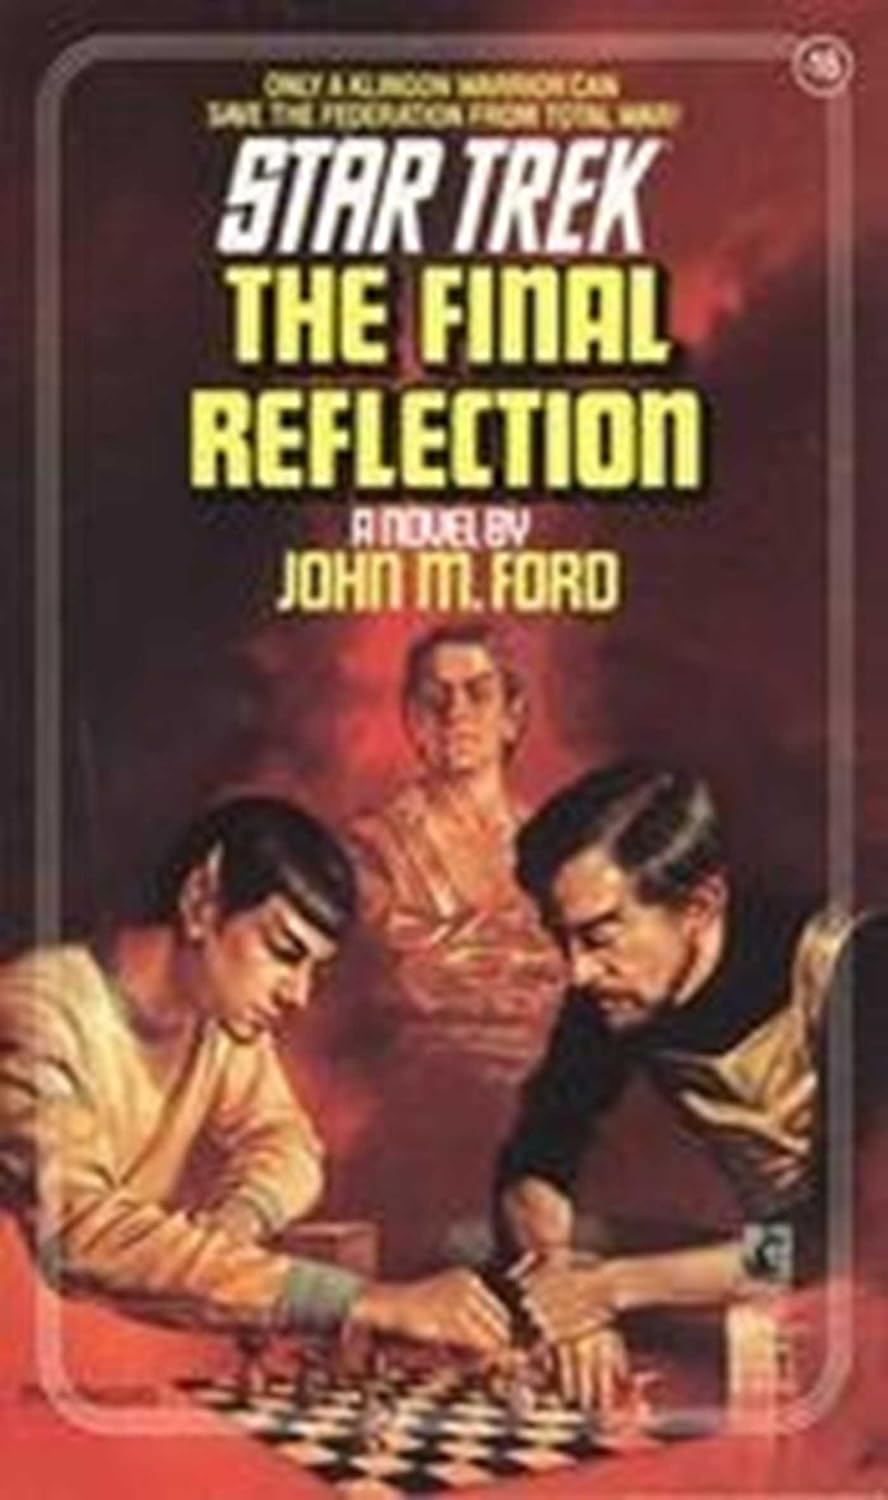 The Final Reflection (Star Trek: The Original Series Book 16)